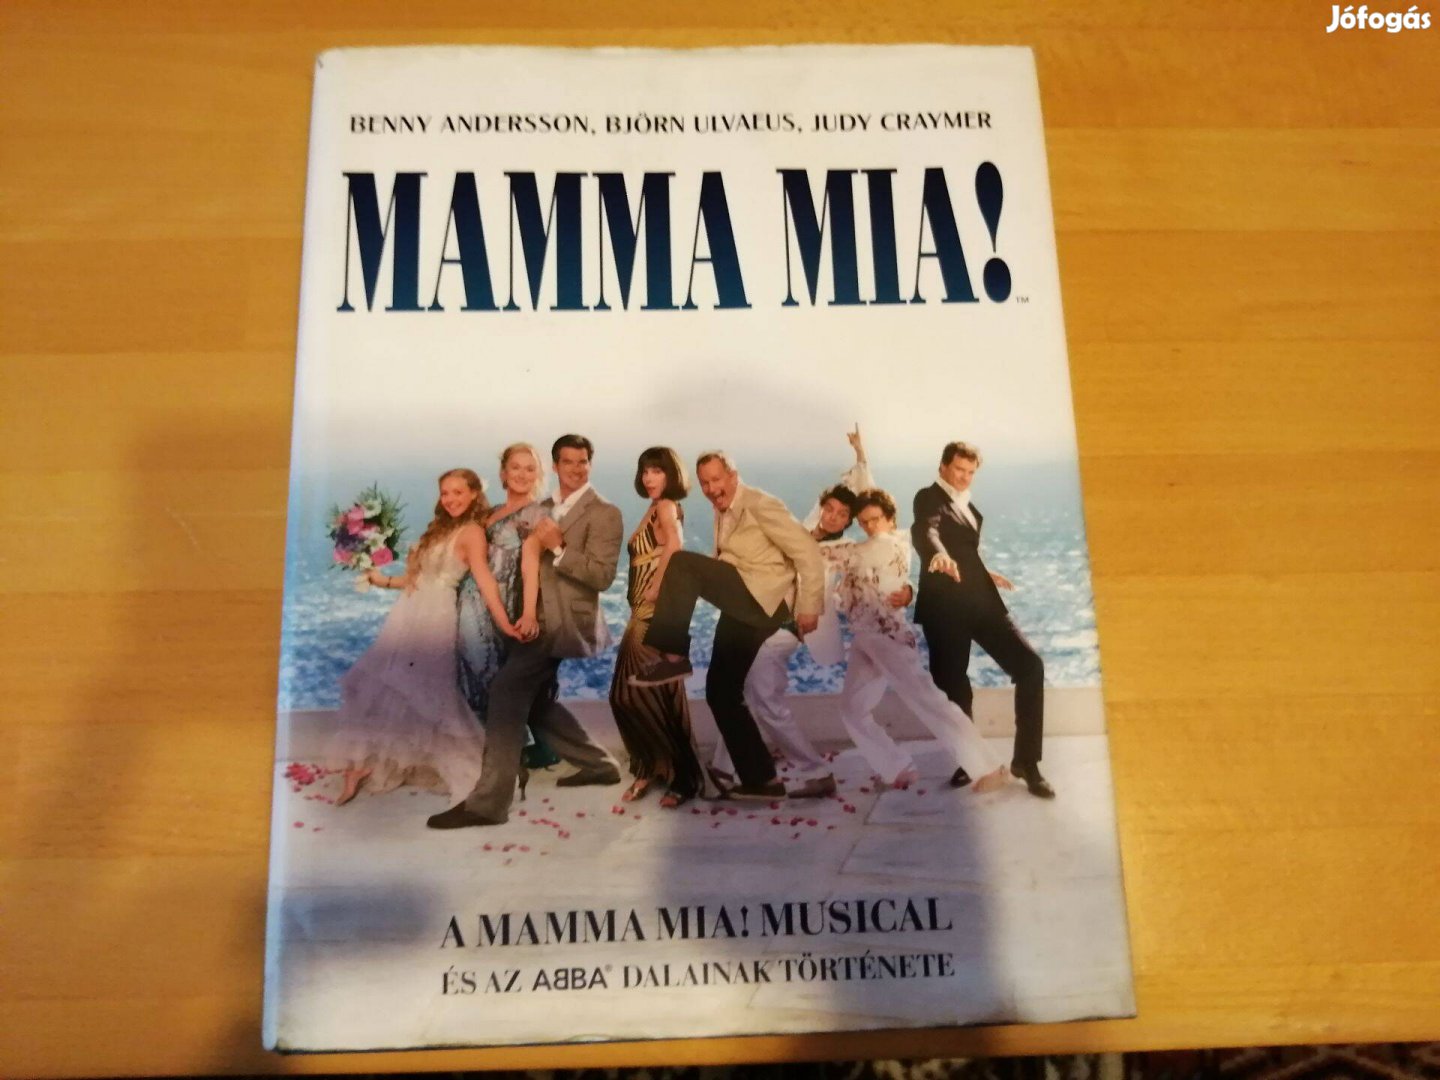 ABBA -könyv-Mamma Mia-szinte új! A bolti ár töredékéért!